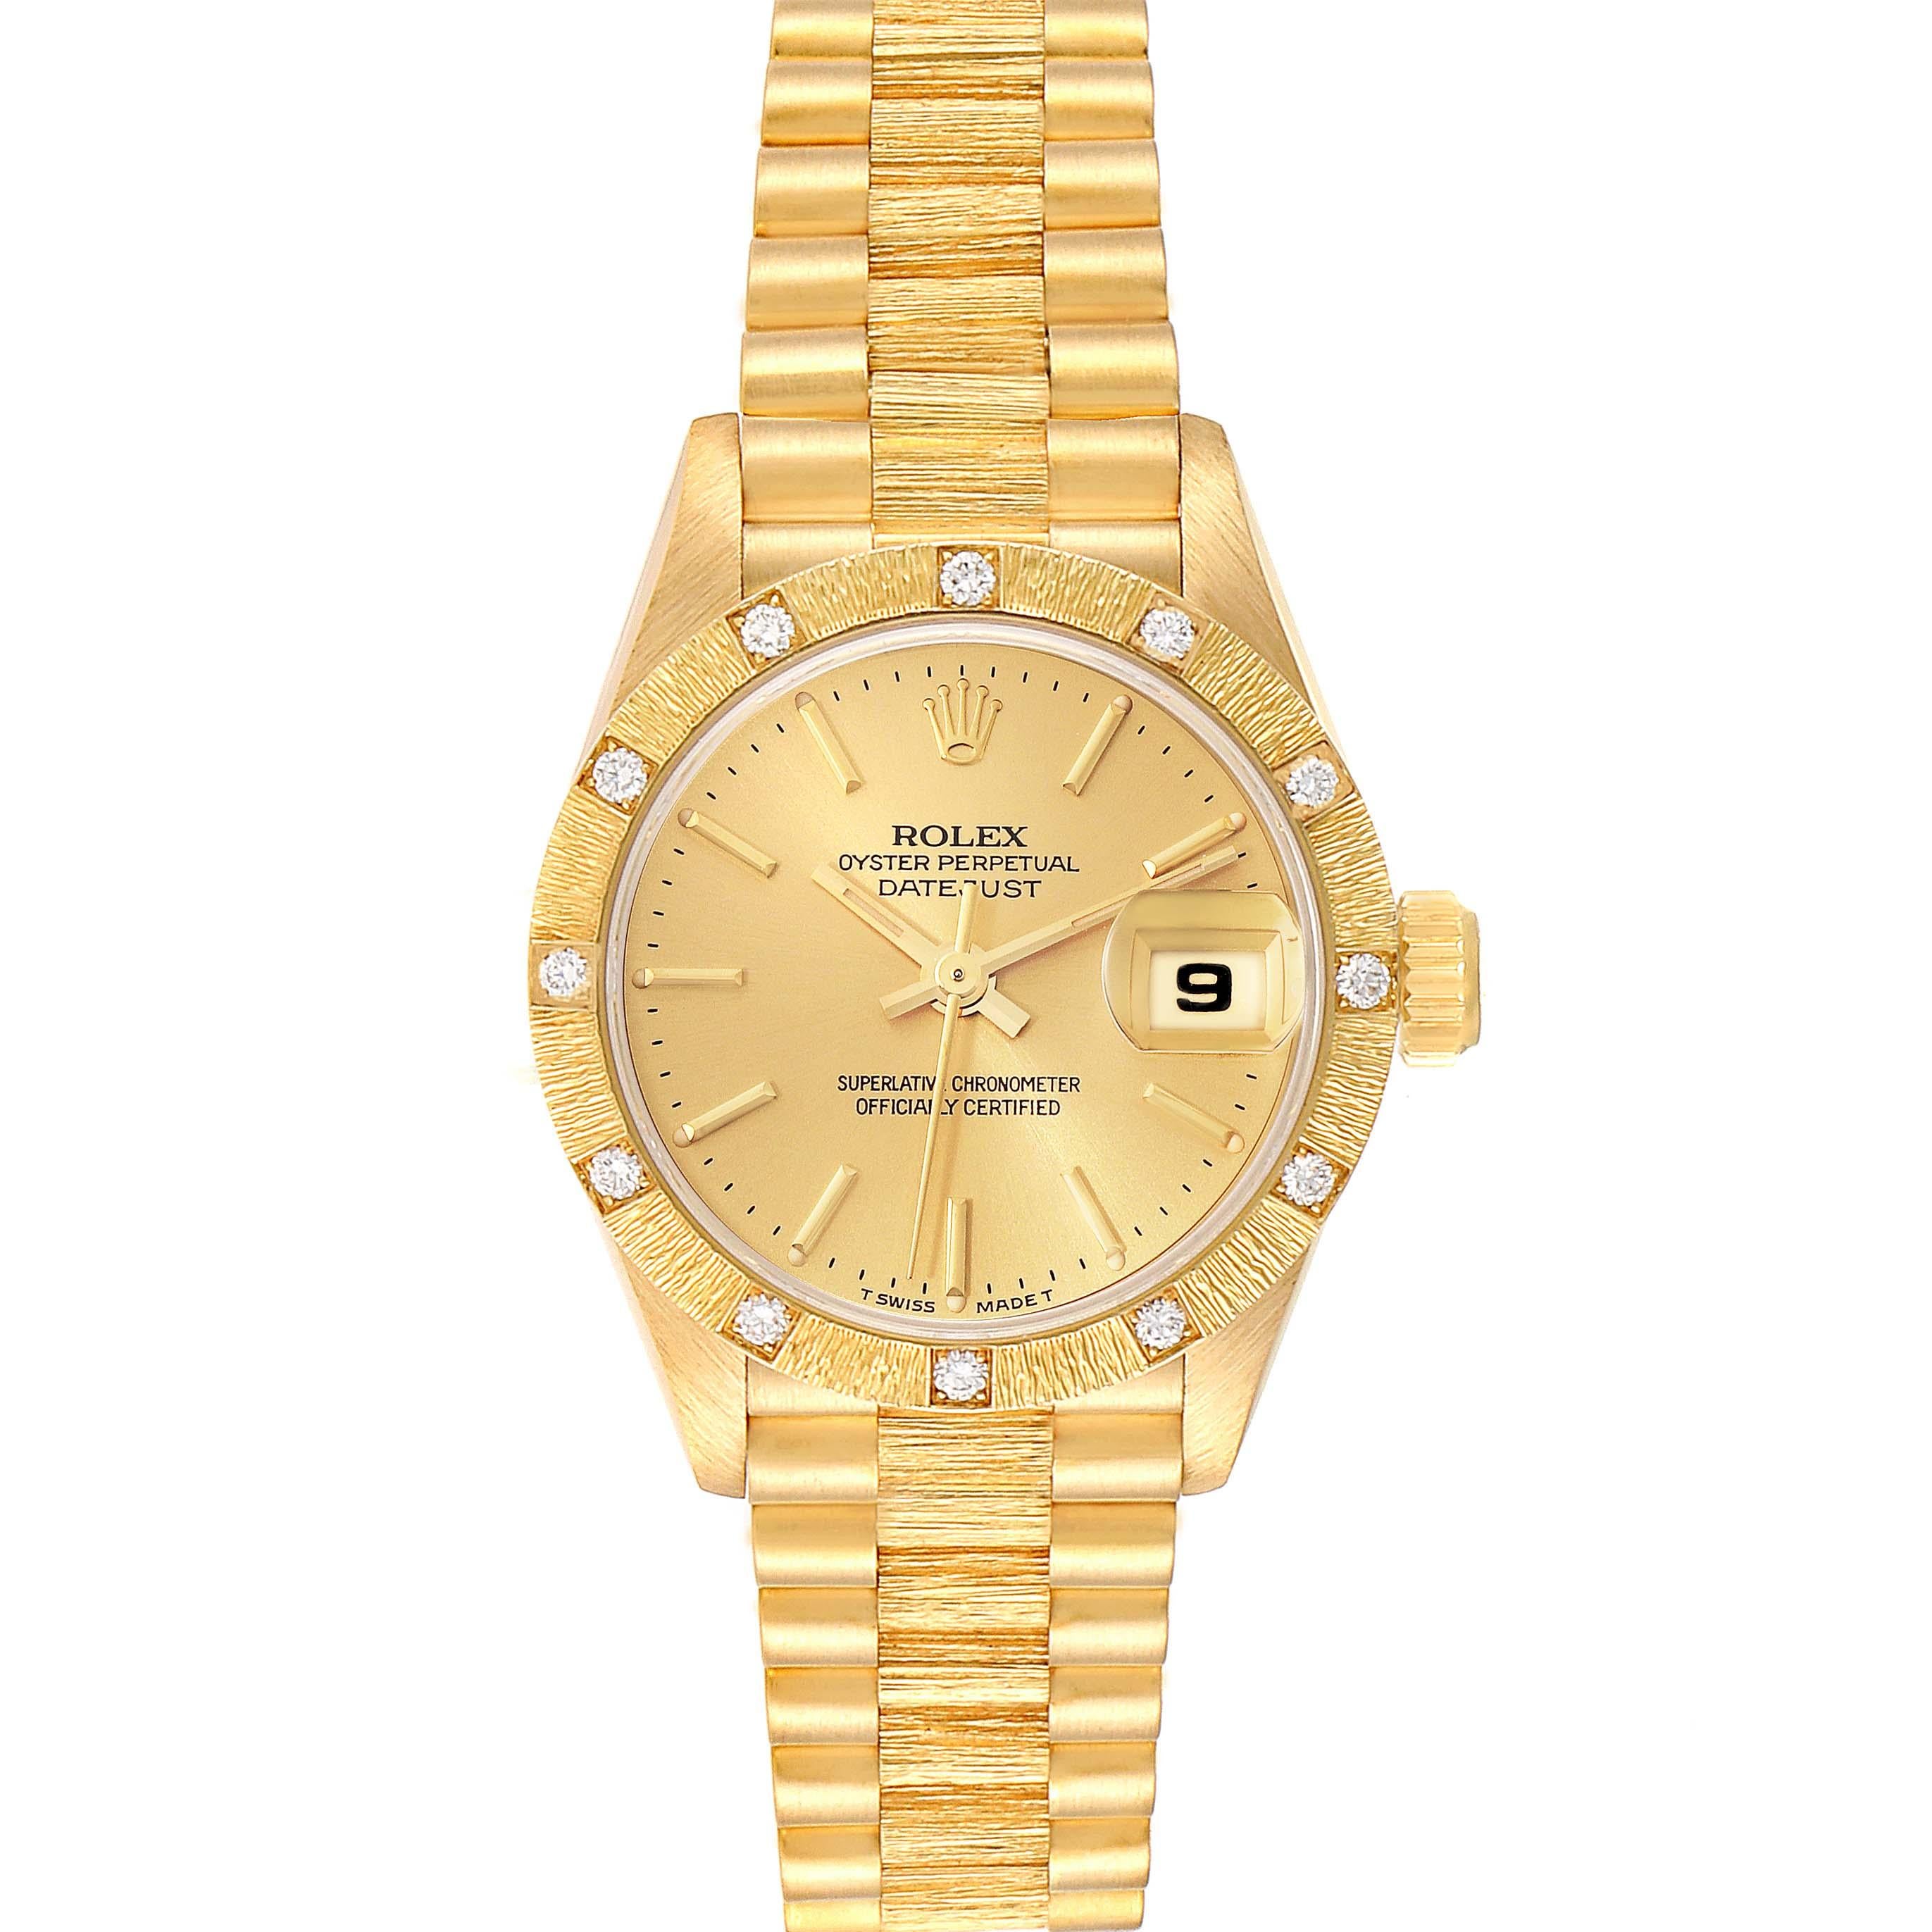 Rolex Präsident Datejust Gelbgold Diamant Damenuhr 69288 Box Papiere. Offiziell zertifiziertes Chronometer-Automatikwerk mit automatischem Aufzug. Oyster-Gehäuse aus 18 Karat Gelbgold mit einem Durchmesser von 26,0 mm. Rolex Logo auf der Krone.